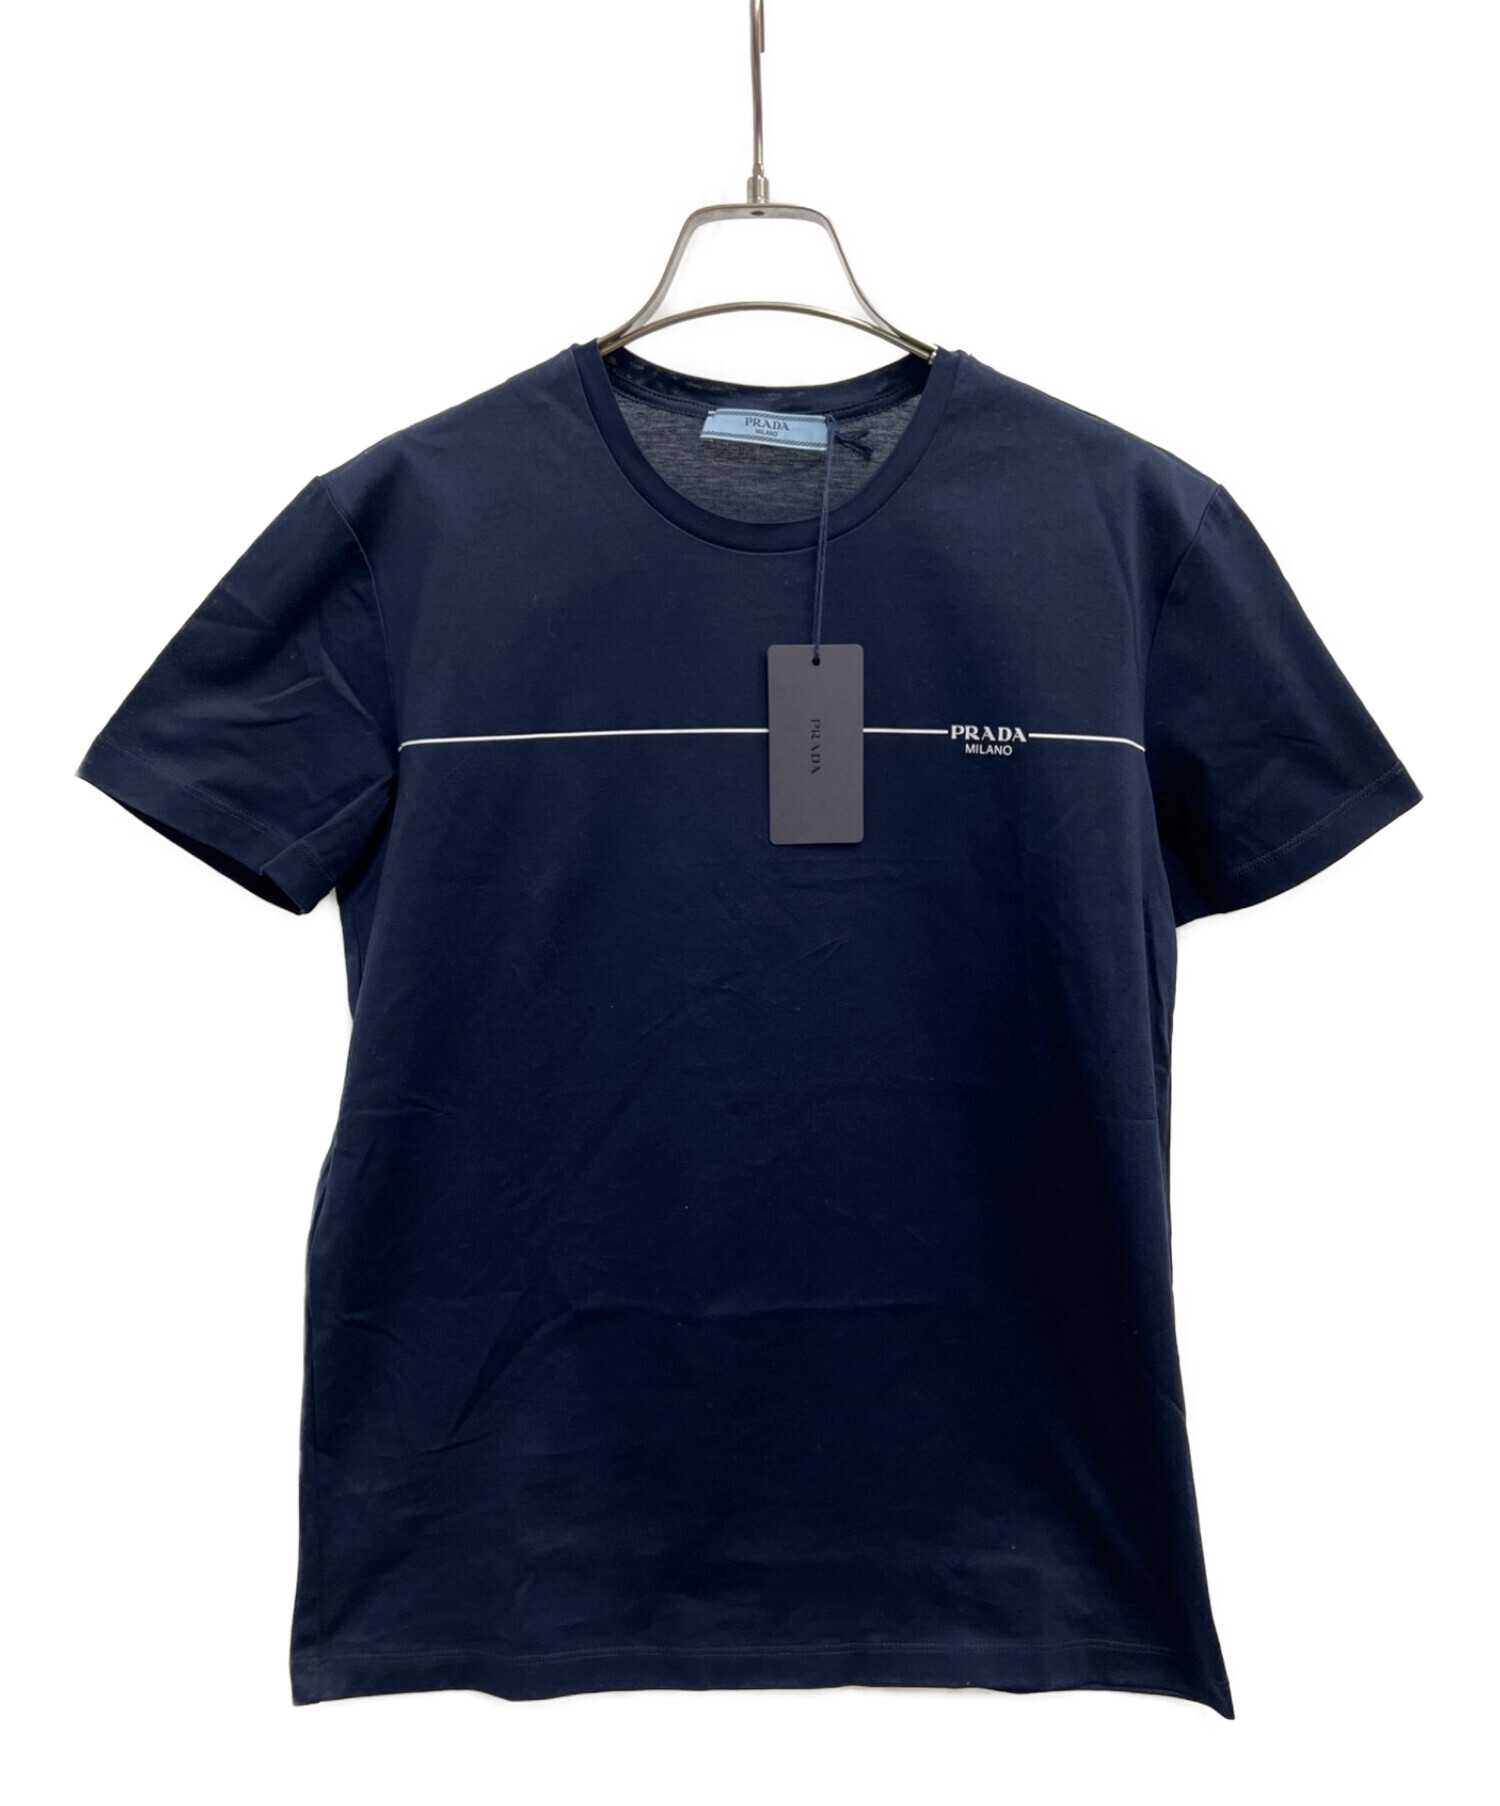 メンズプラダPRADA Tシャツ ネイビーL - Tシャツ/カットソー(半袖/袖なし)